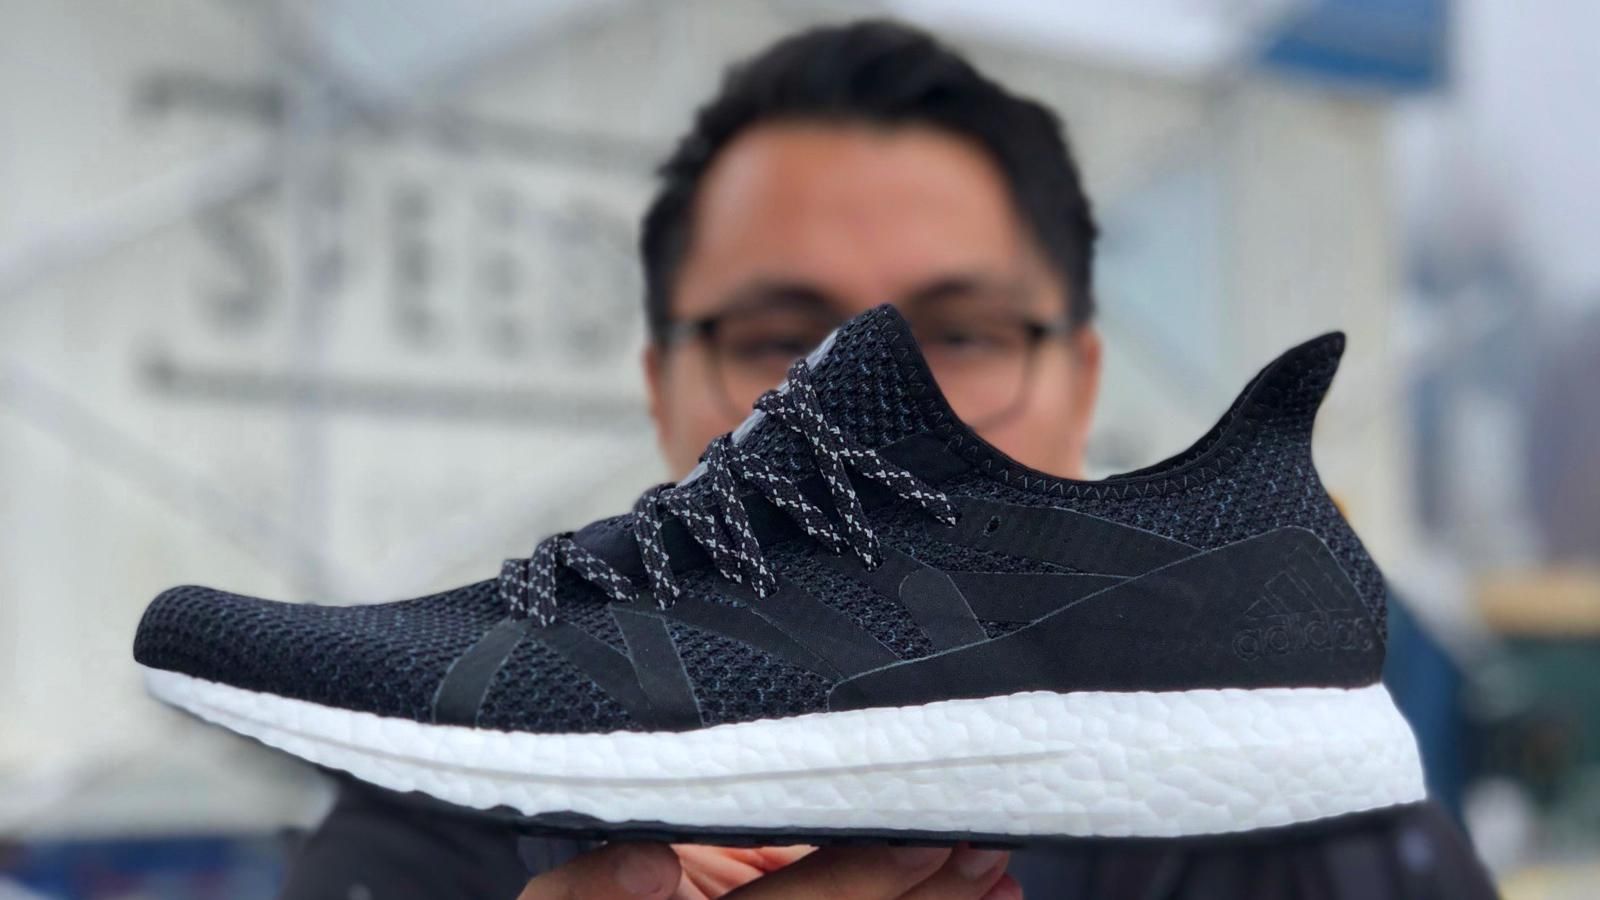  Adidas випустила "розумні" кросівки для жителів Нью-Йорка: чим вони особливі